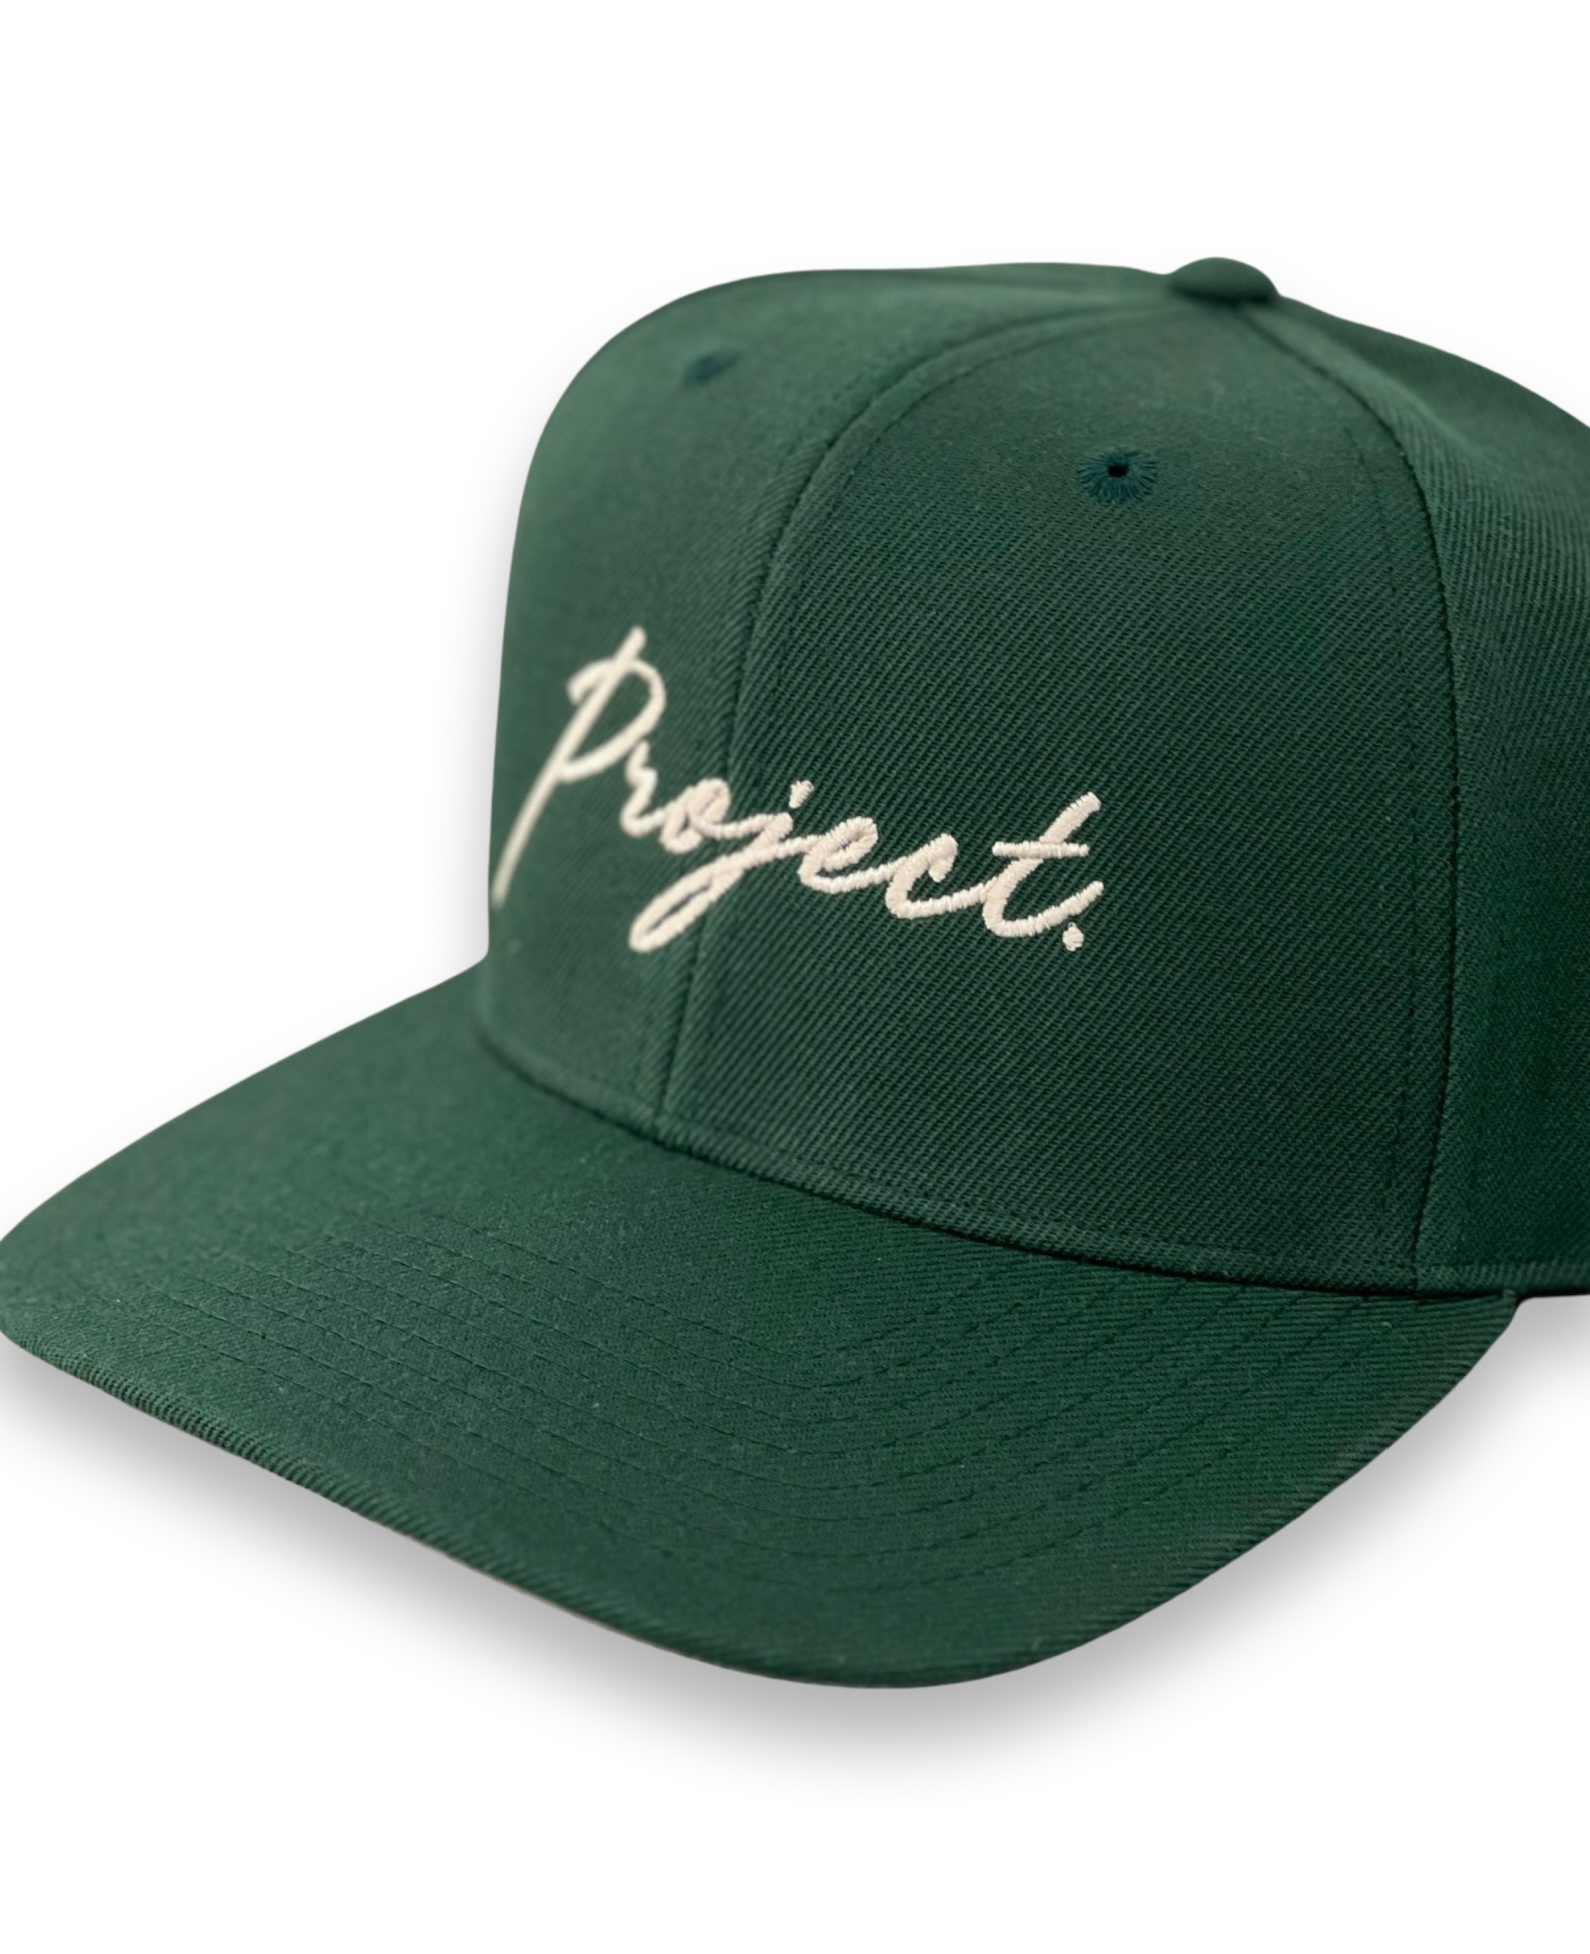 PROJECT. Script Snapback Cap (Green)